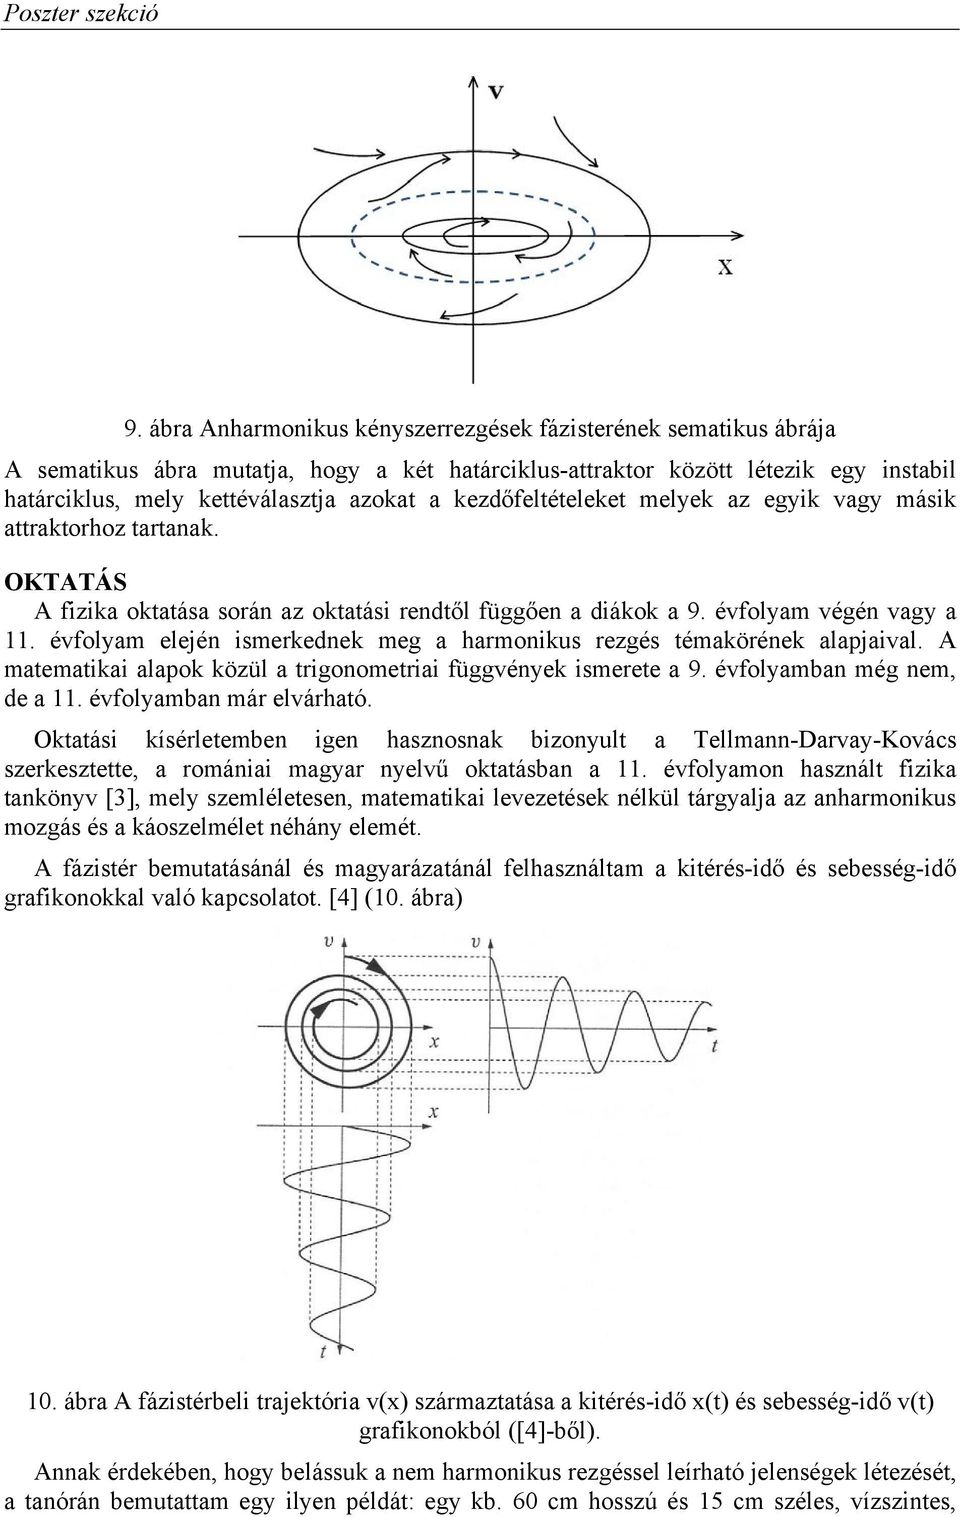 NEMLINEÁRIS REZGÉSEK A KÖZÉPISKOLAI OKTATÁSBAN TEACHING NON-LINEAR  OSCILLATIONS IN SECONDARY SCHOOL - PDF Free Download